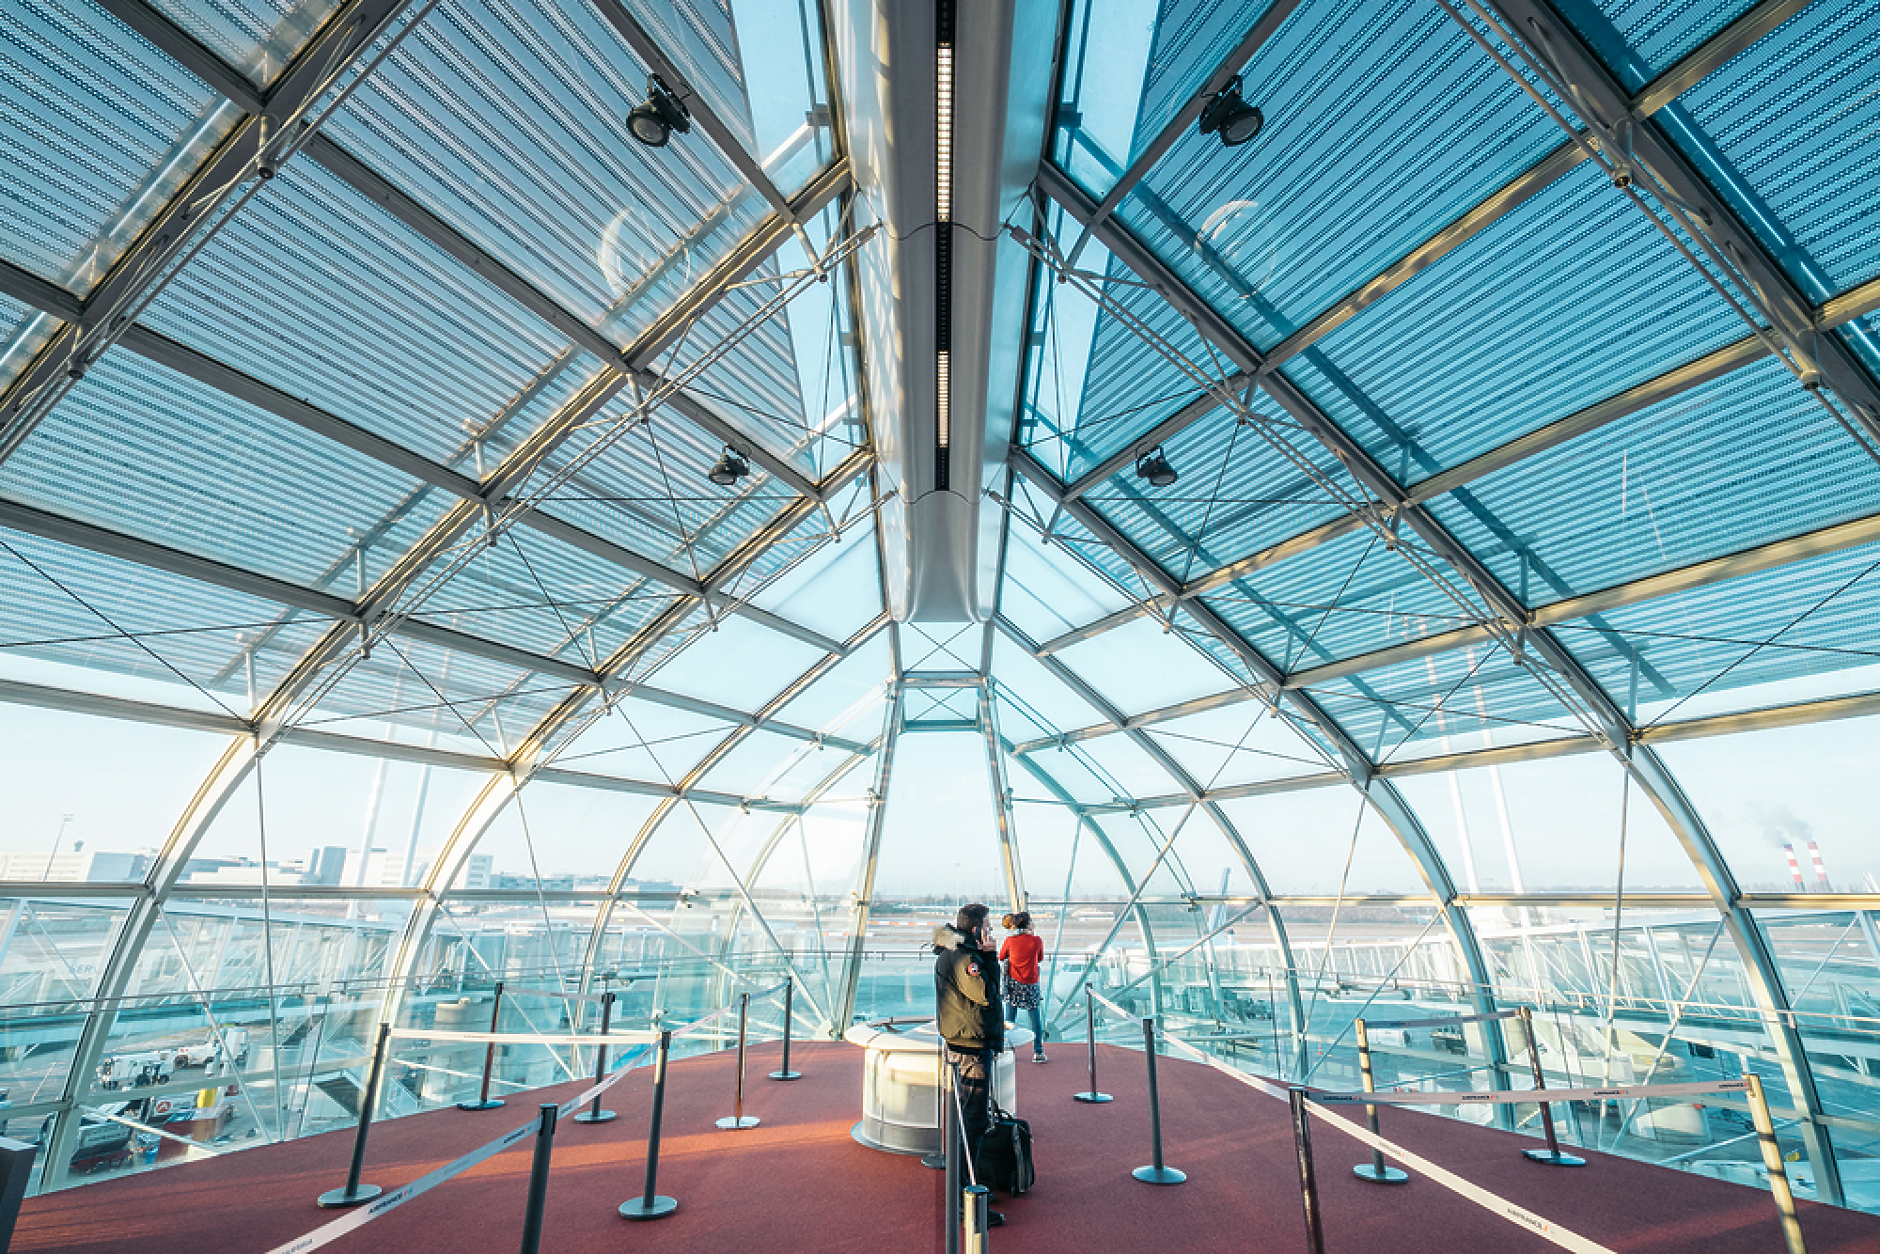 Терминал за излитащи на "Шарл дьо Гол" - най-голямото международно летище на Франция. Снимка: Shutterstock